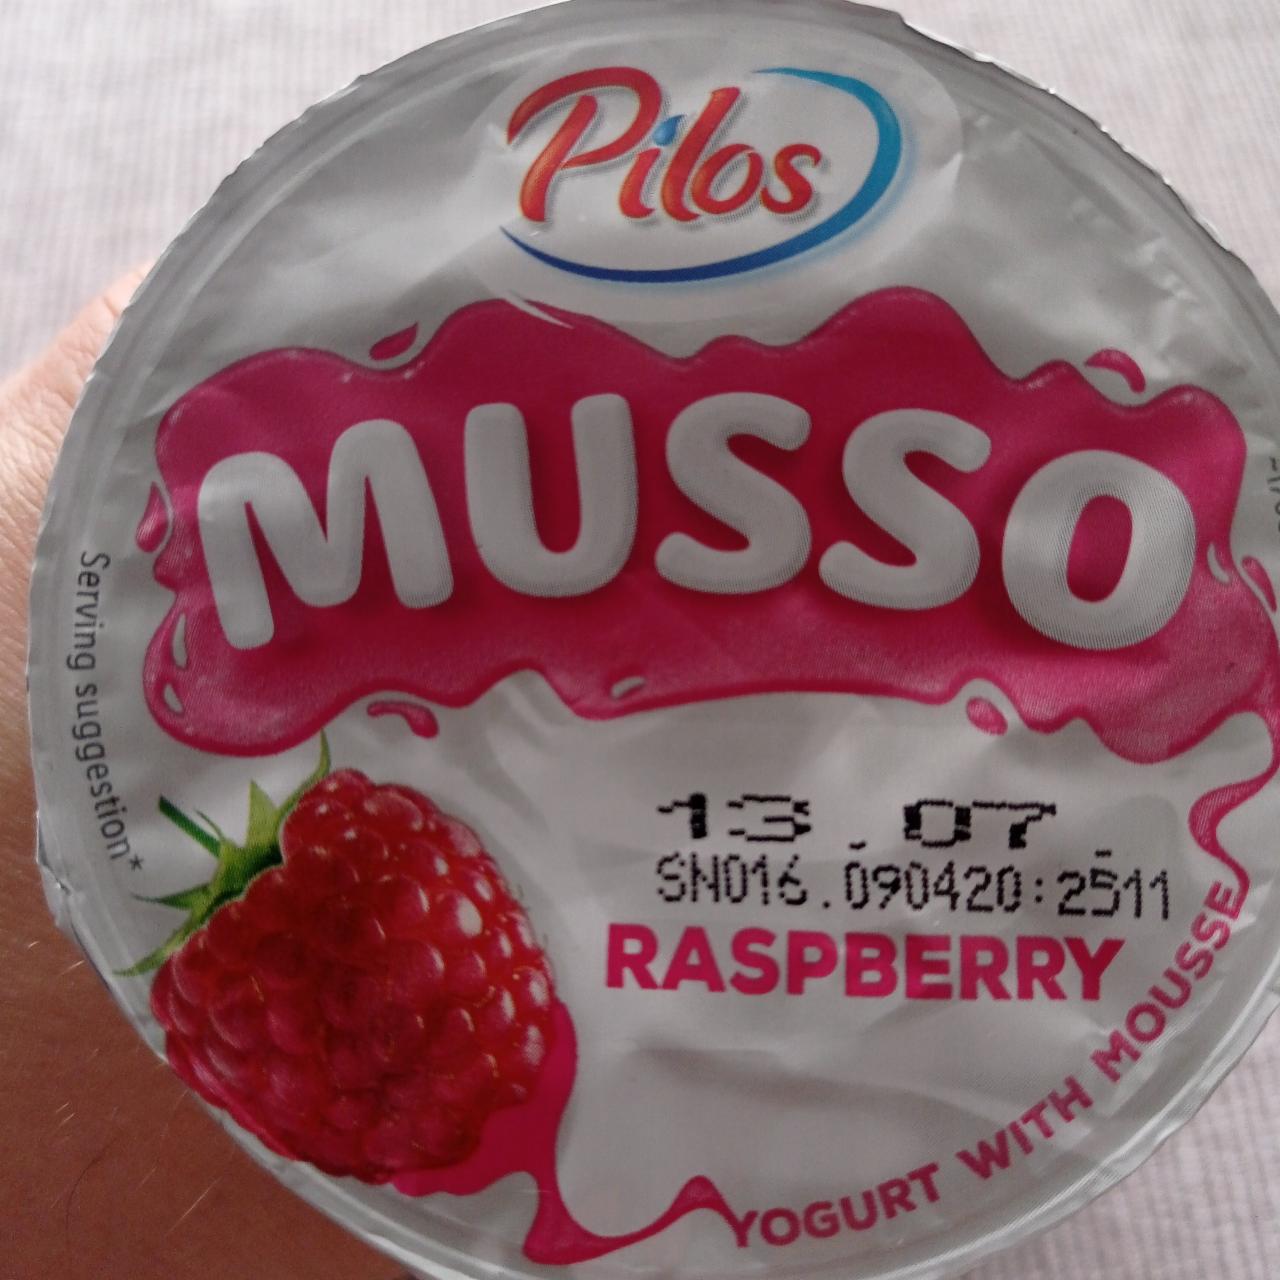 Képek - Rétegezett málnás krémjoghurt Musso Pilos